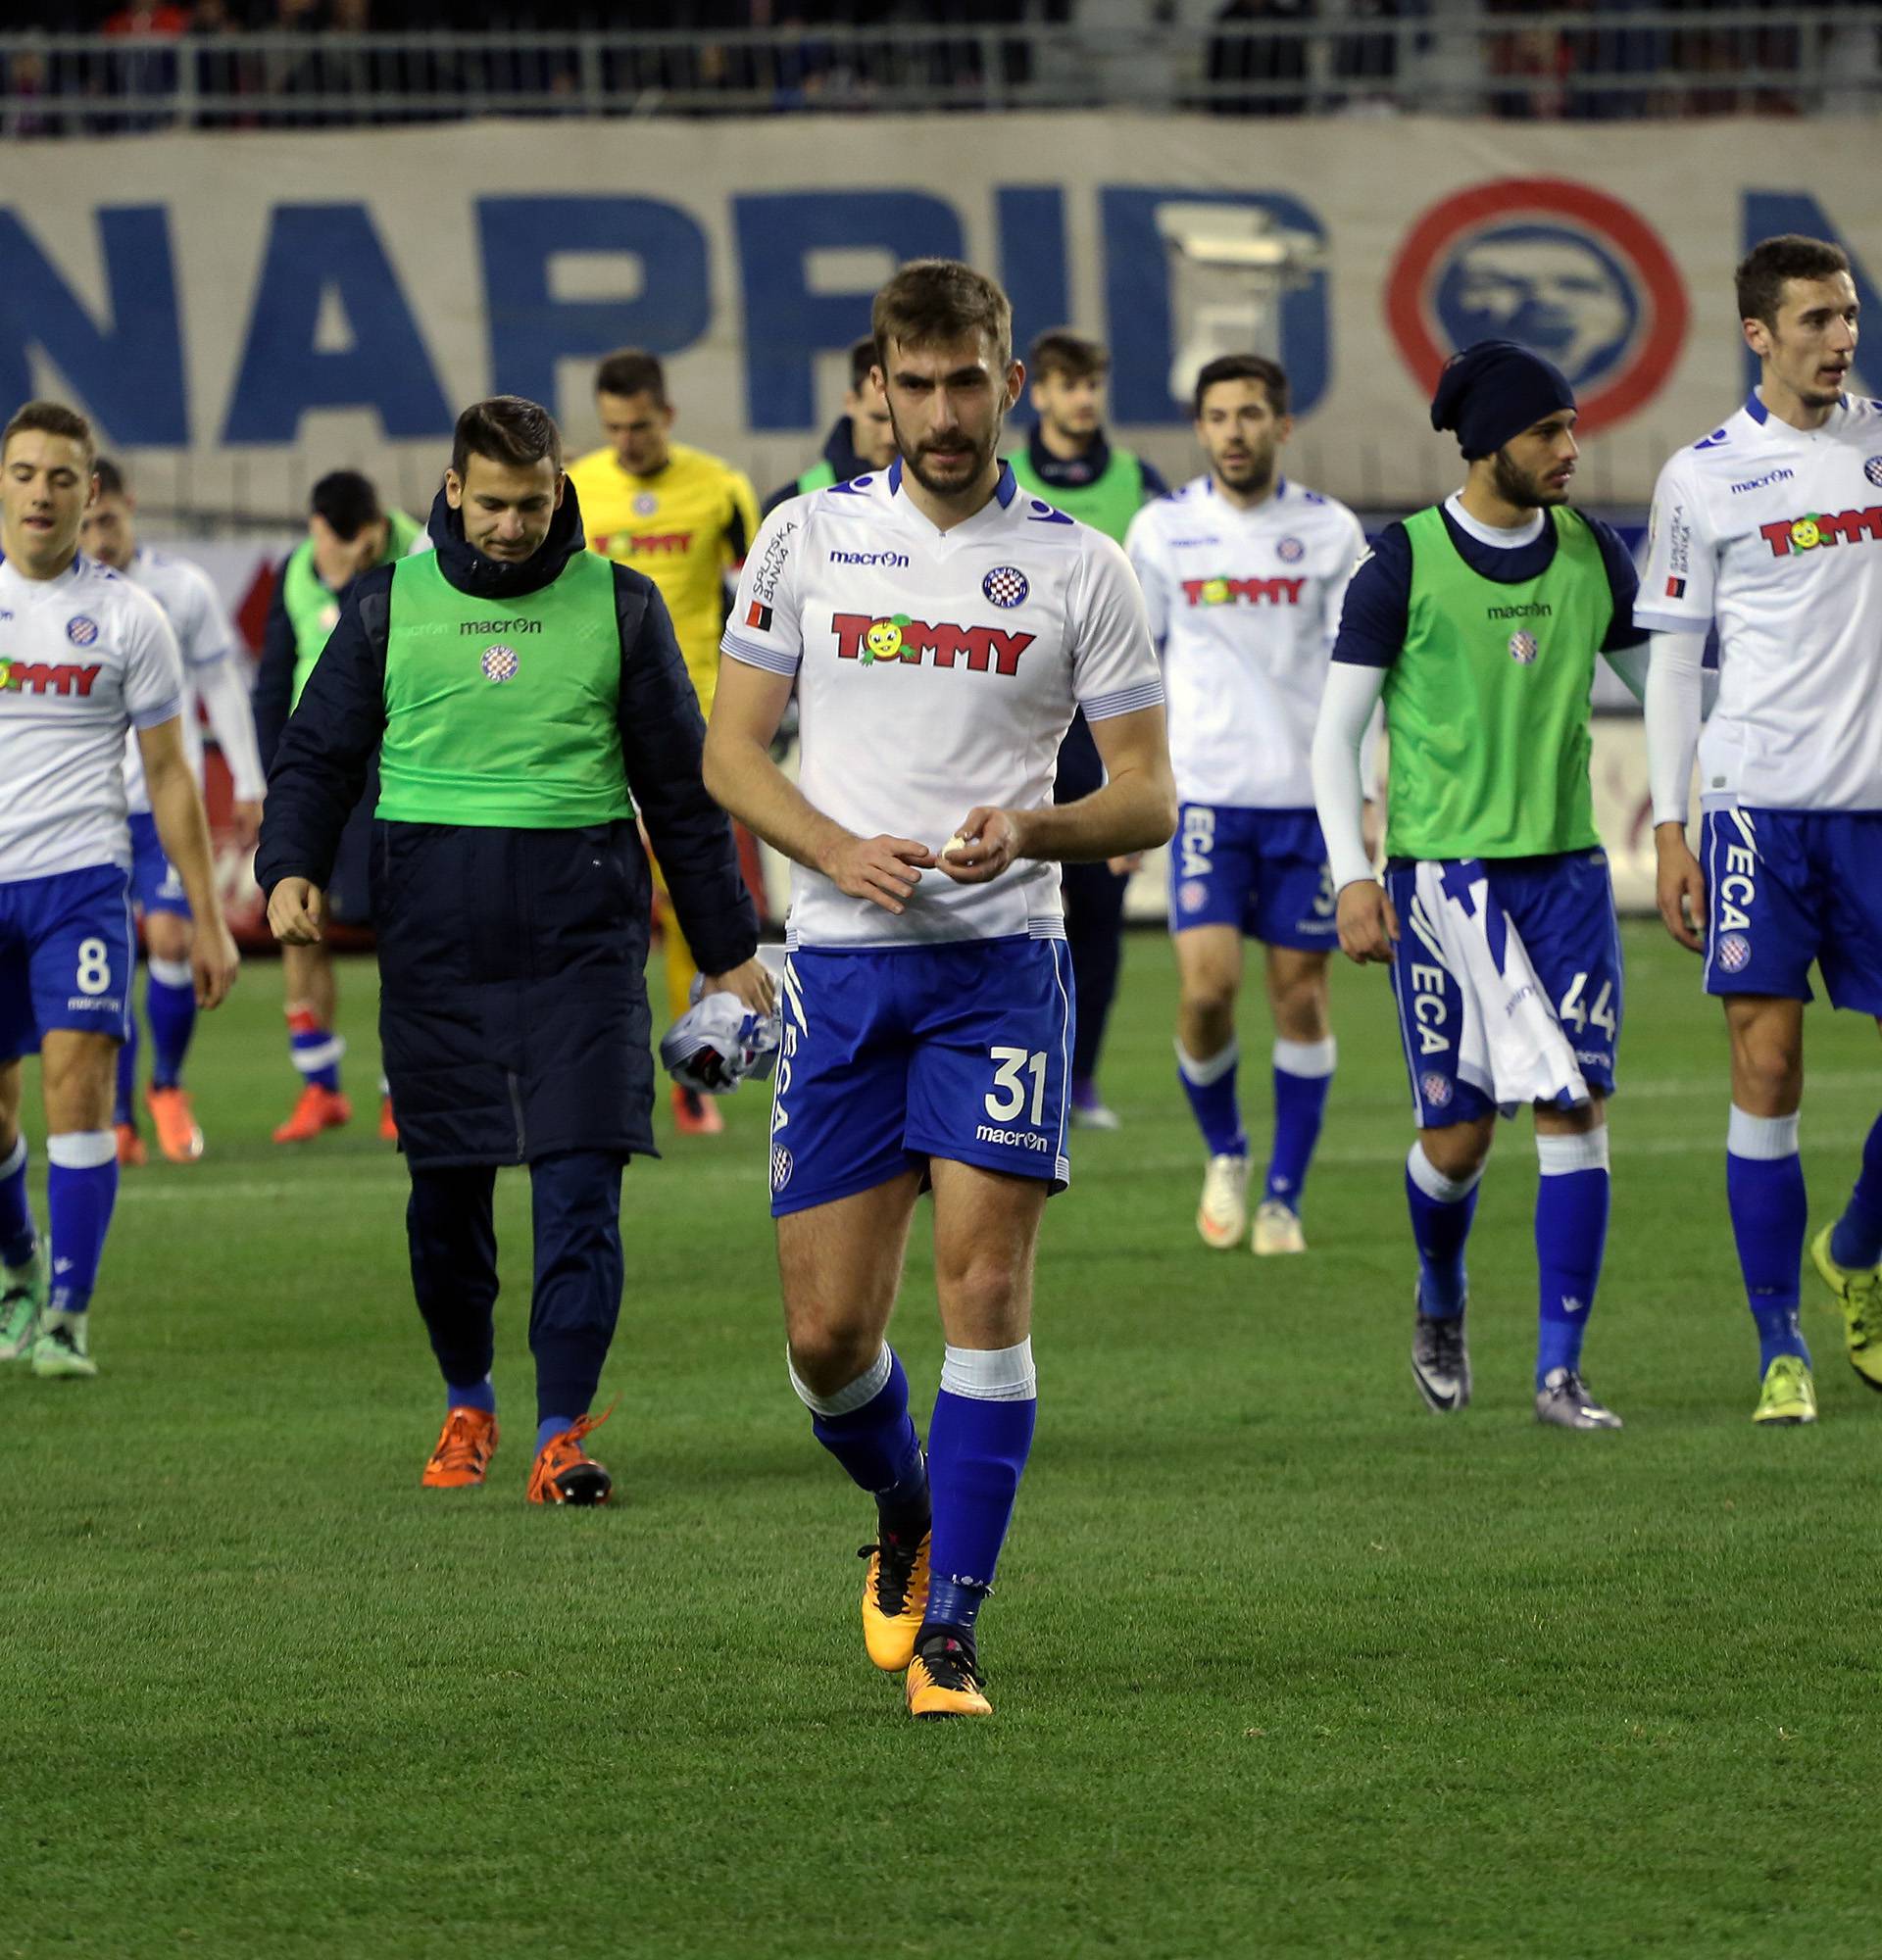 'Netko pravi nepotrebnu buku, ali ne pregovaram s Hajdukom'